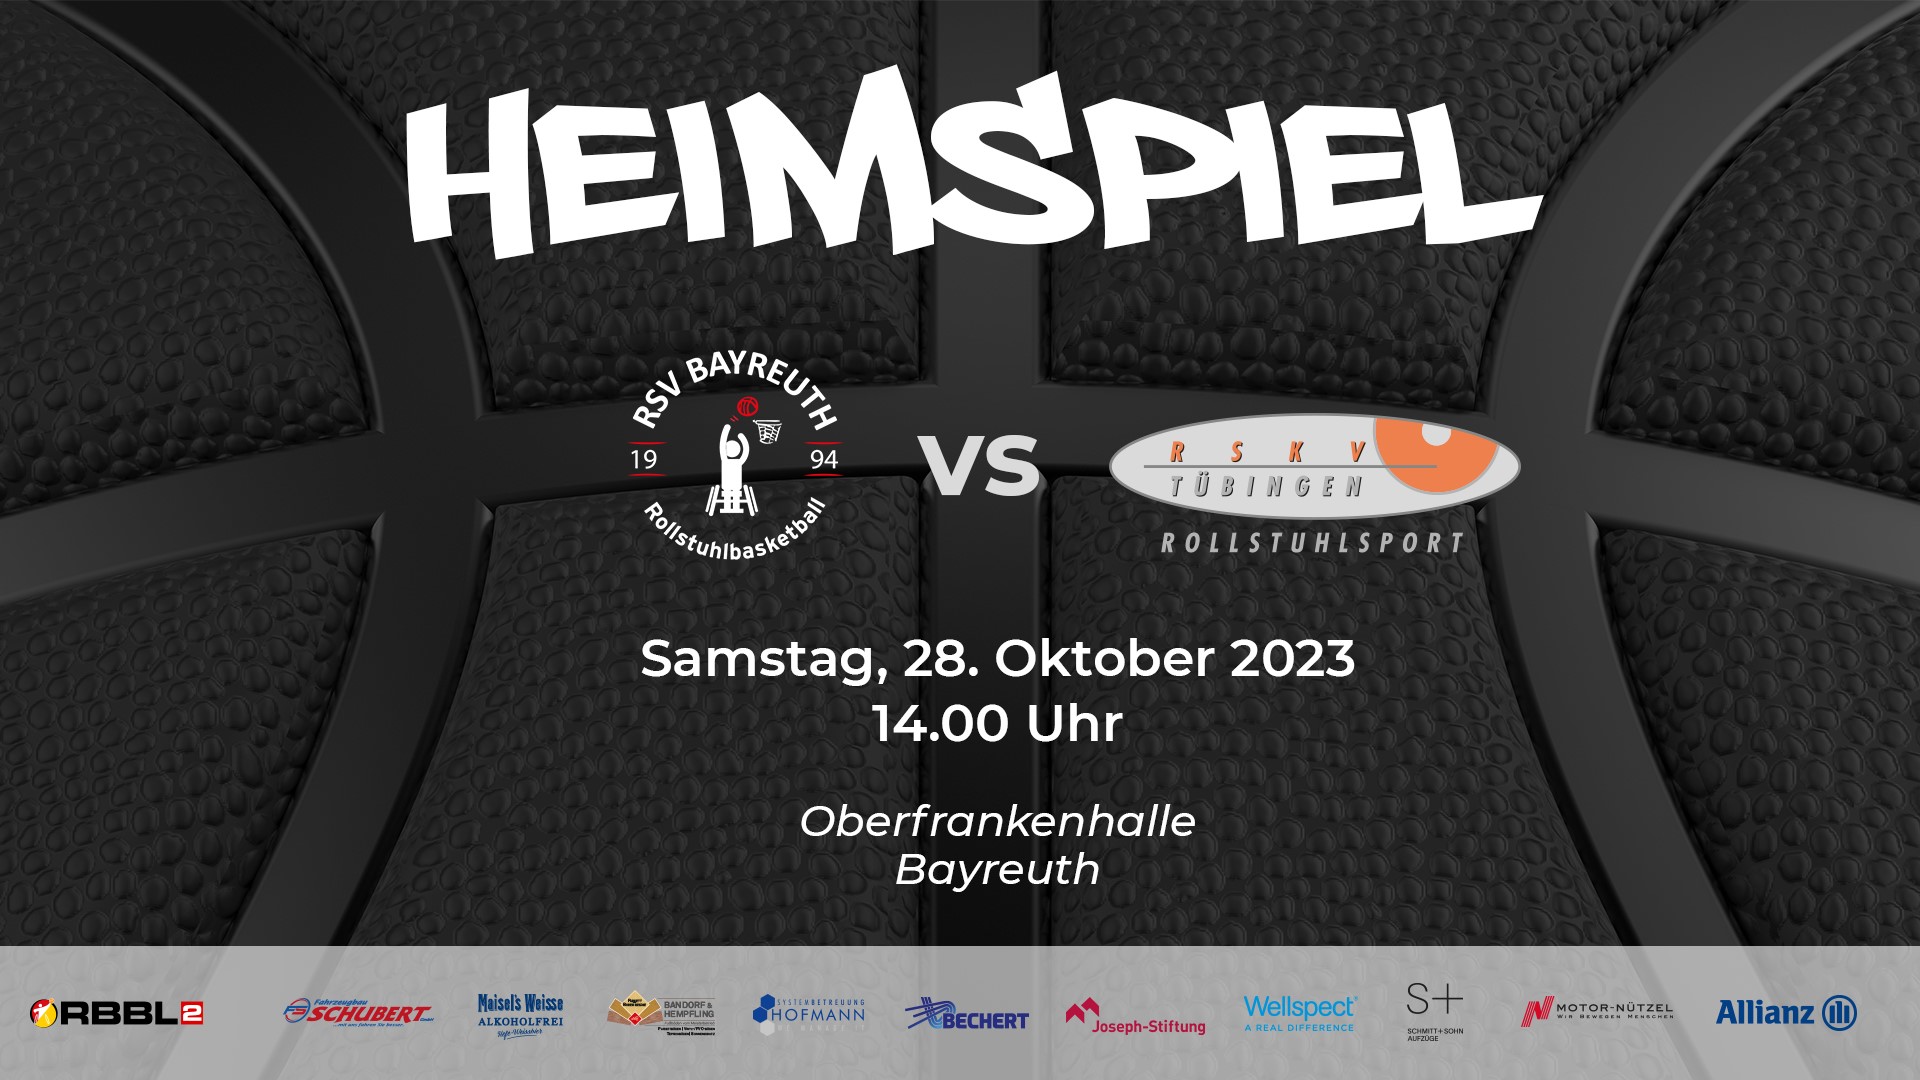 Heimspiel RSV Bayreuth gegen RSKV Tübingen a, 28.10.2023 um 14 Uhr in der Oberfankenhalle Bayreuth